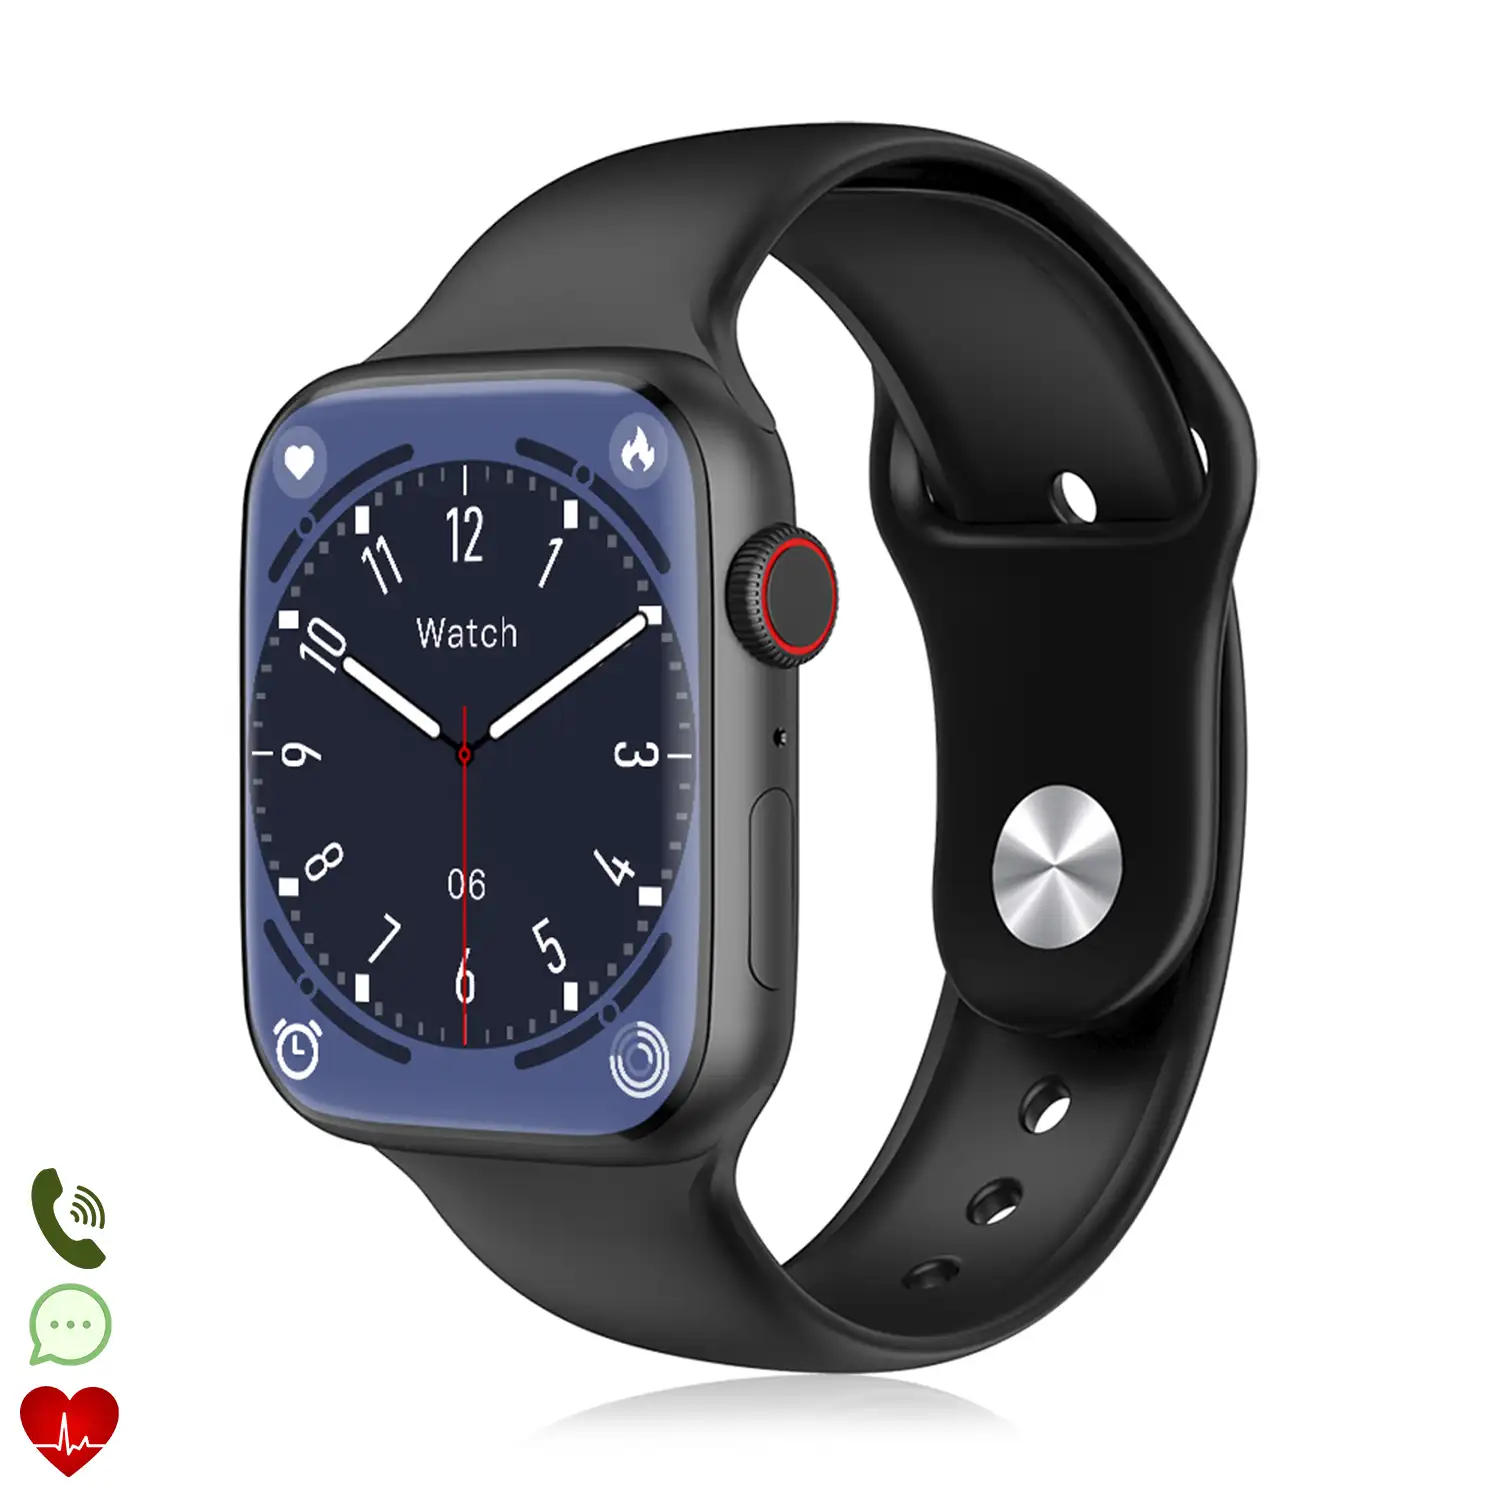 Smartwatch W29 Max con pantalla de 2.1 y modo always on. Monitor cardiaco 24h, O2 en sangre, Termómetro corporal,notificaciones de Apps.